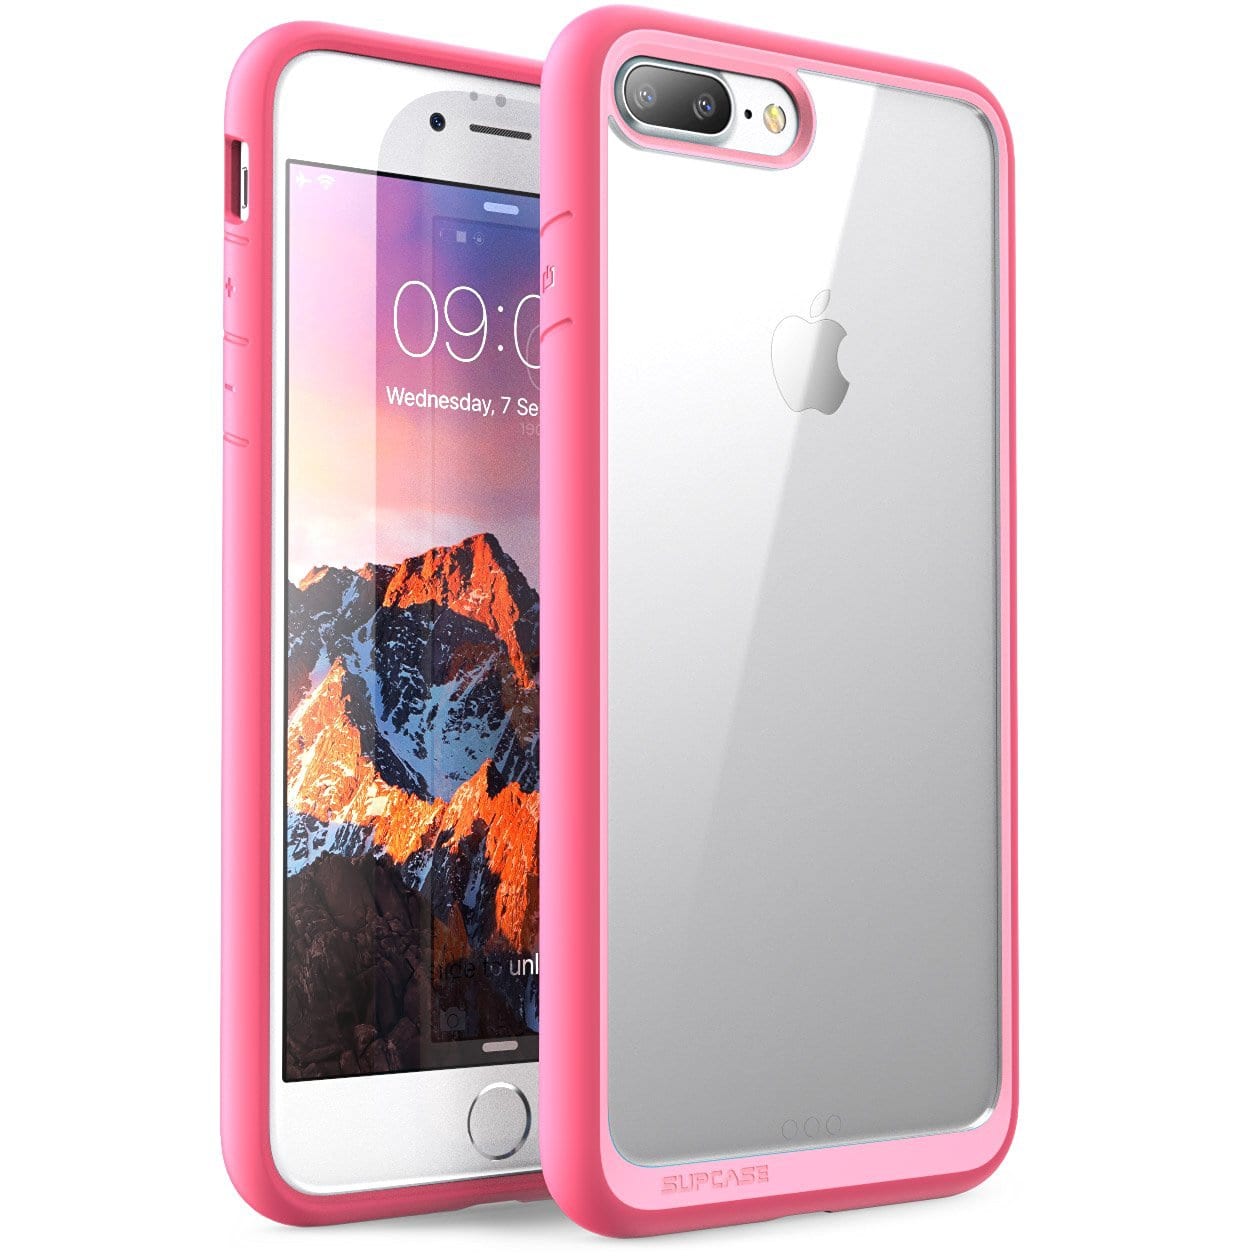 Best iPhone 7 Case: Unicorn Pink iPhone 7 Plus Case 2017